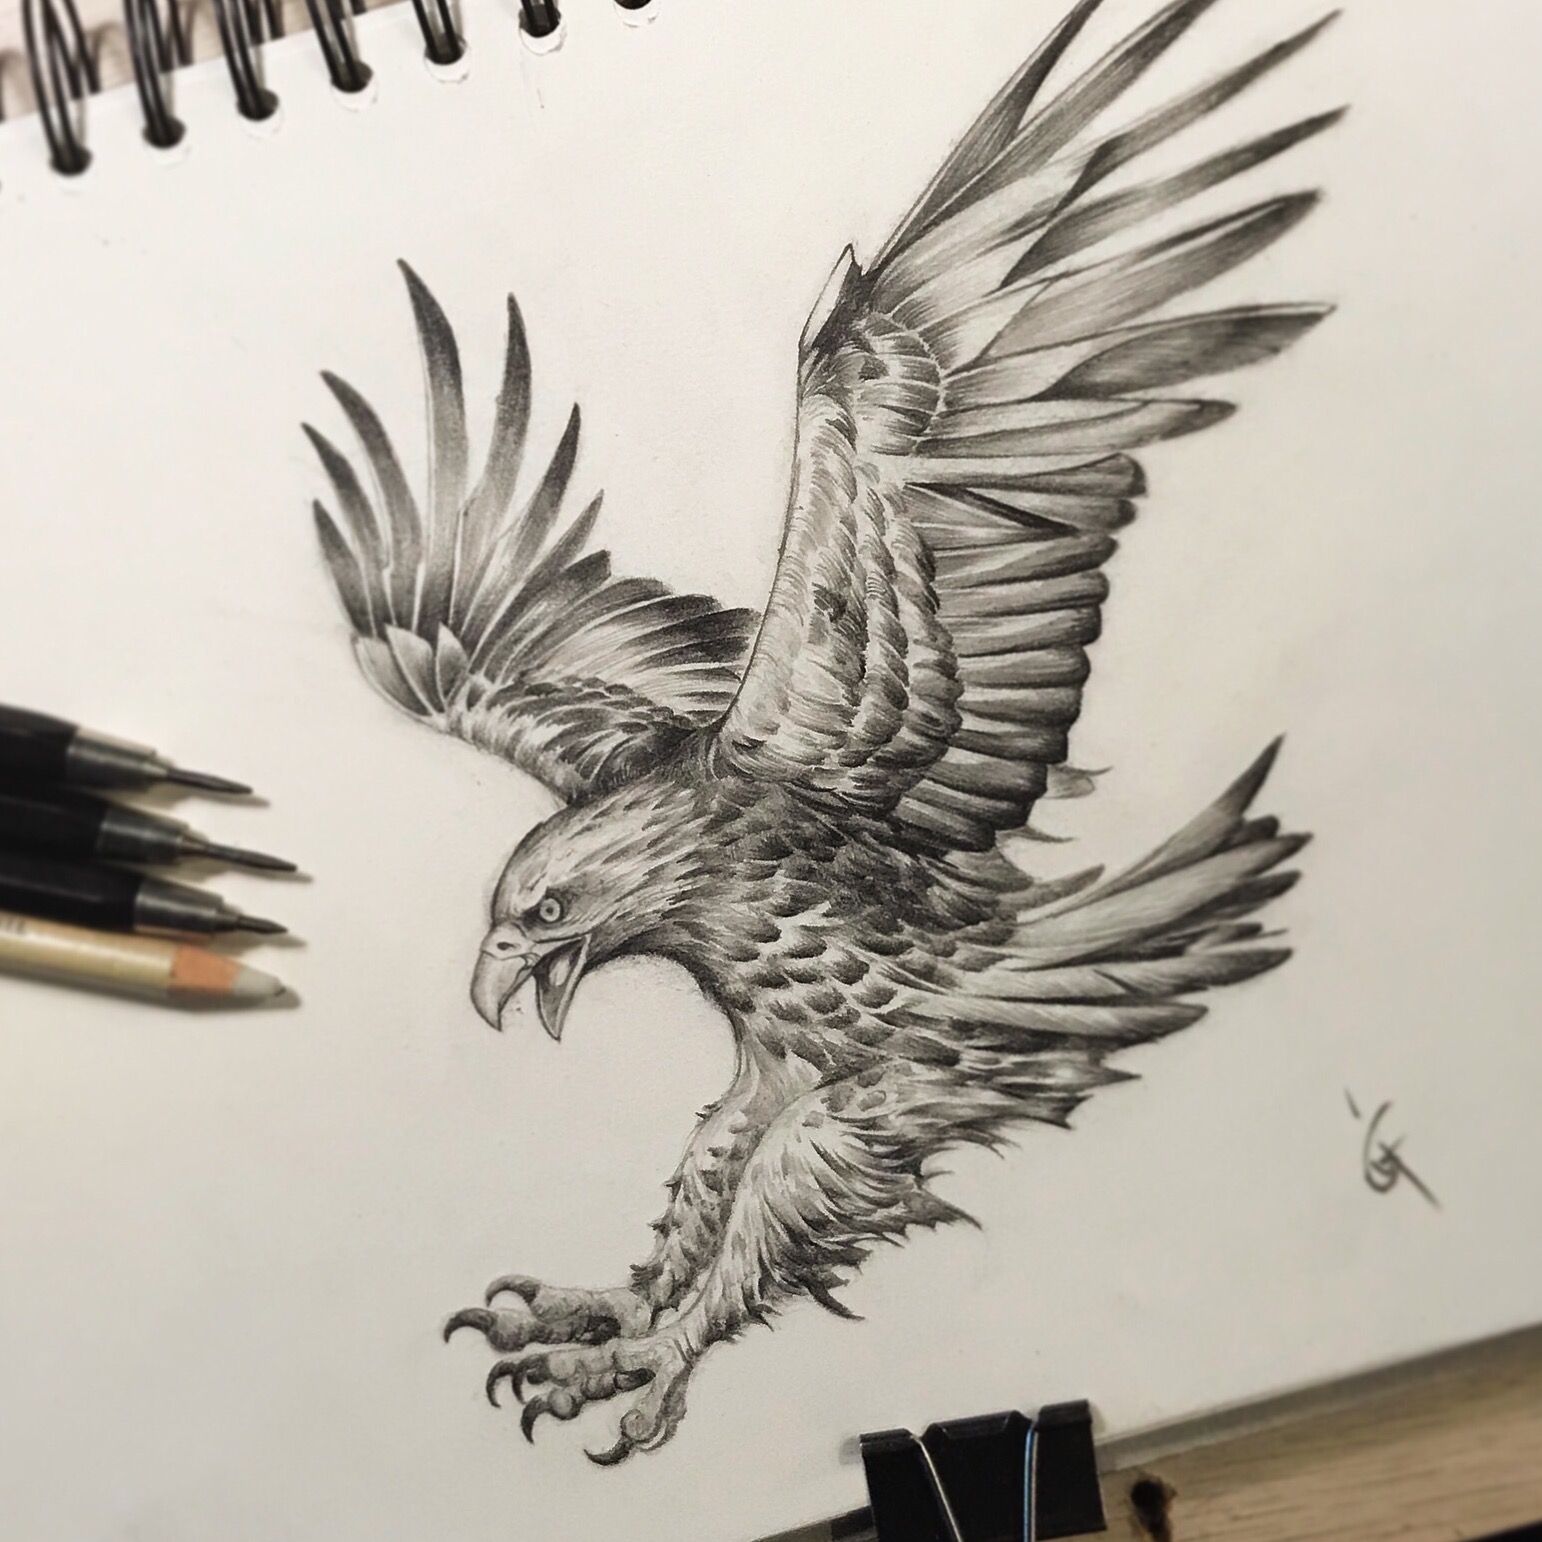 The Eagle, Bird of Prey